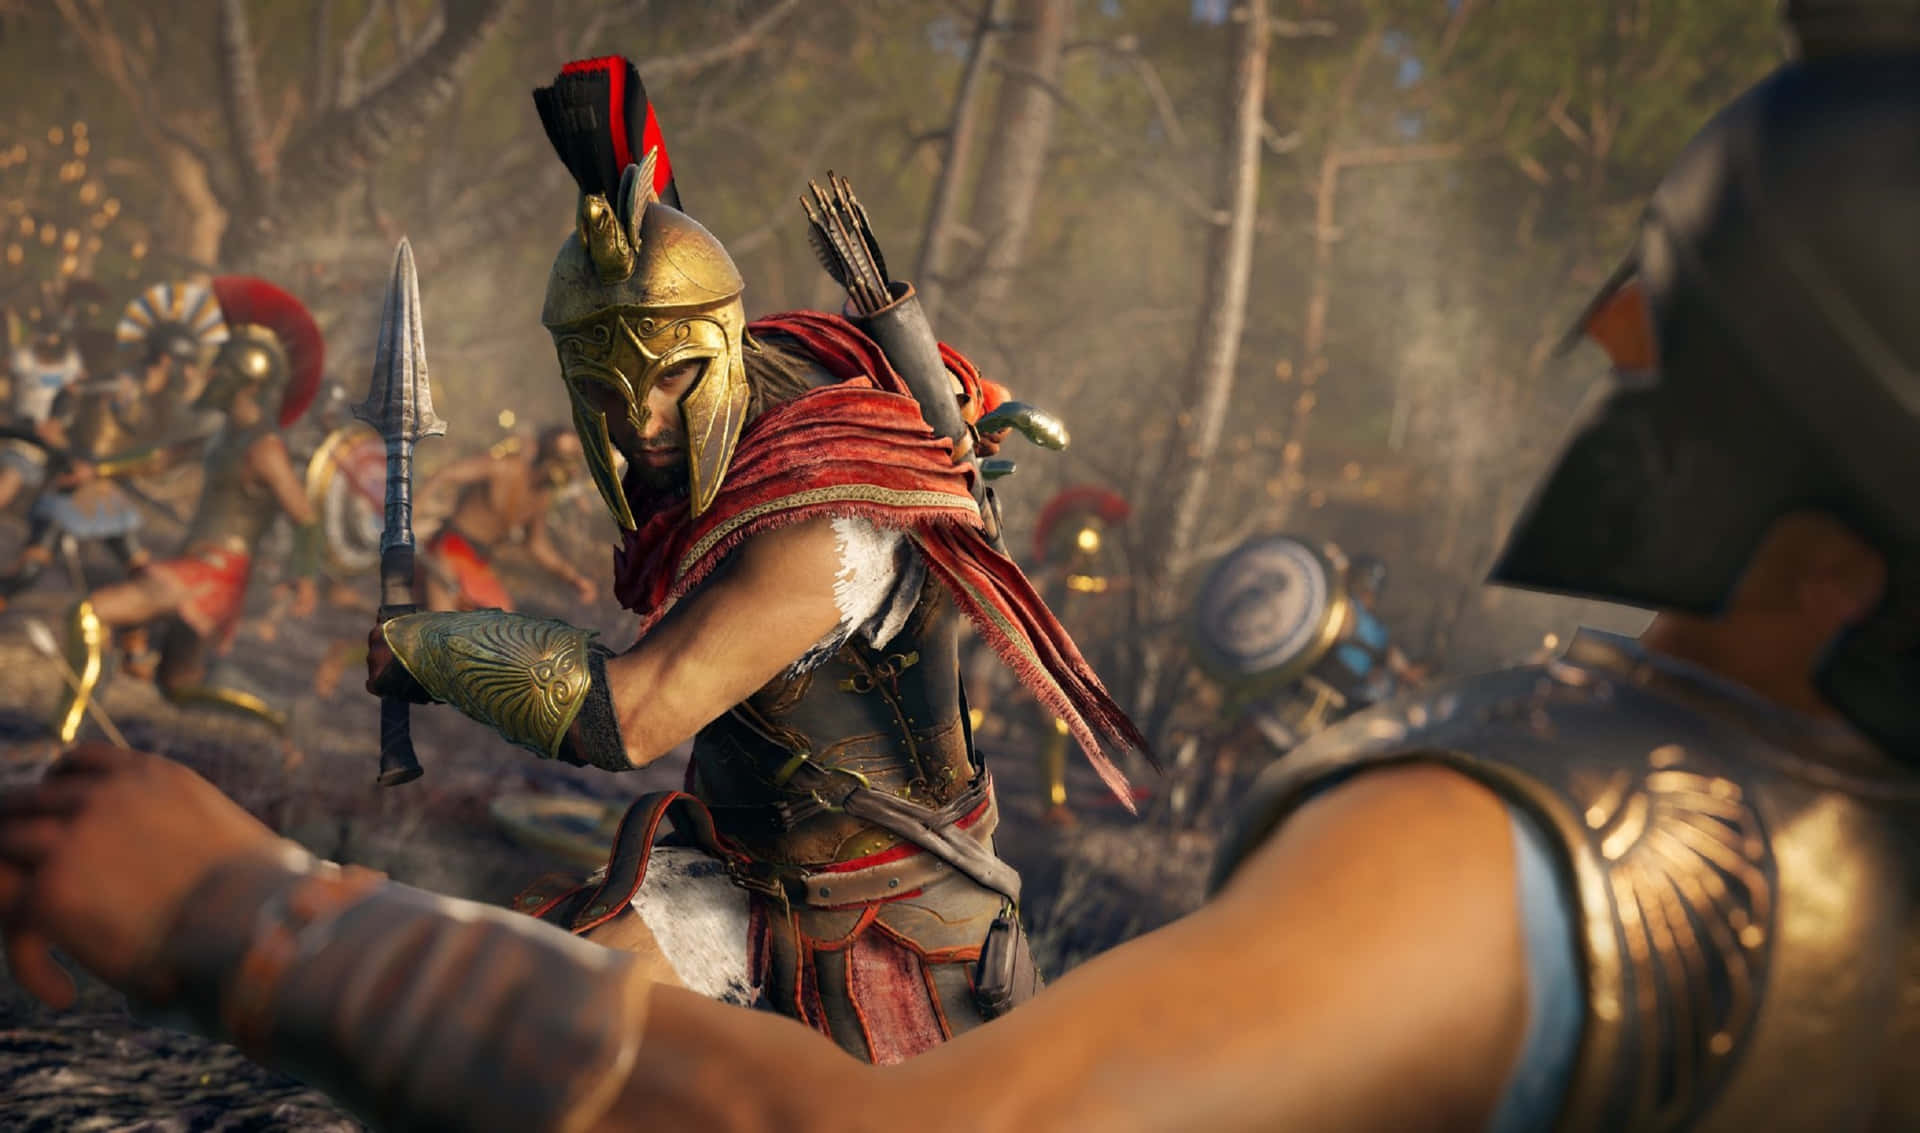 Fundode Tela Do Assassin's Creed Odyssey Alexios Em Guerra Com Resolução De 2440x1440.